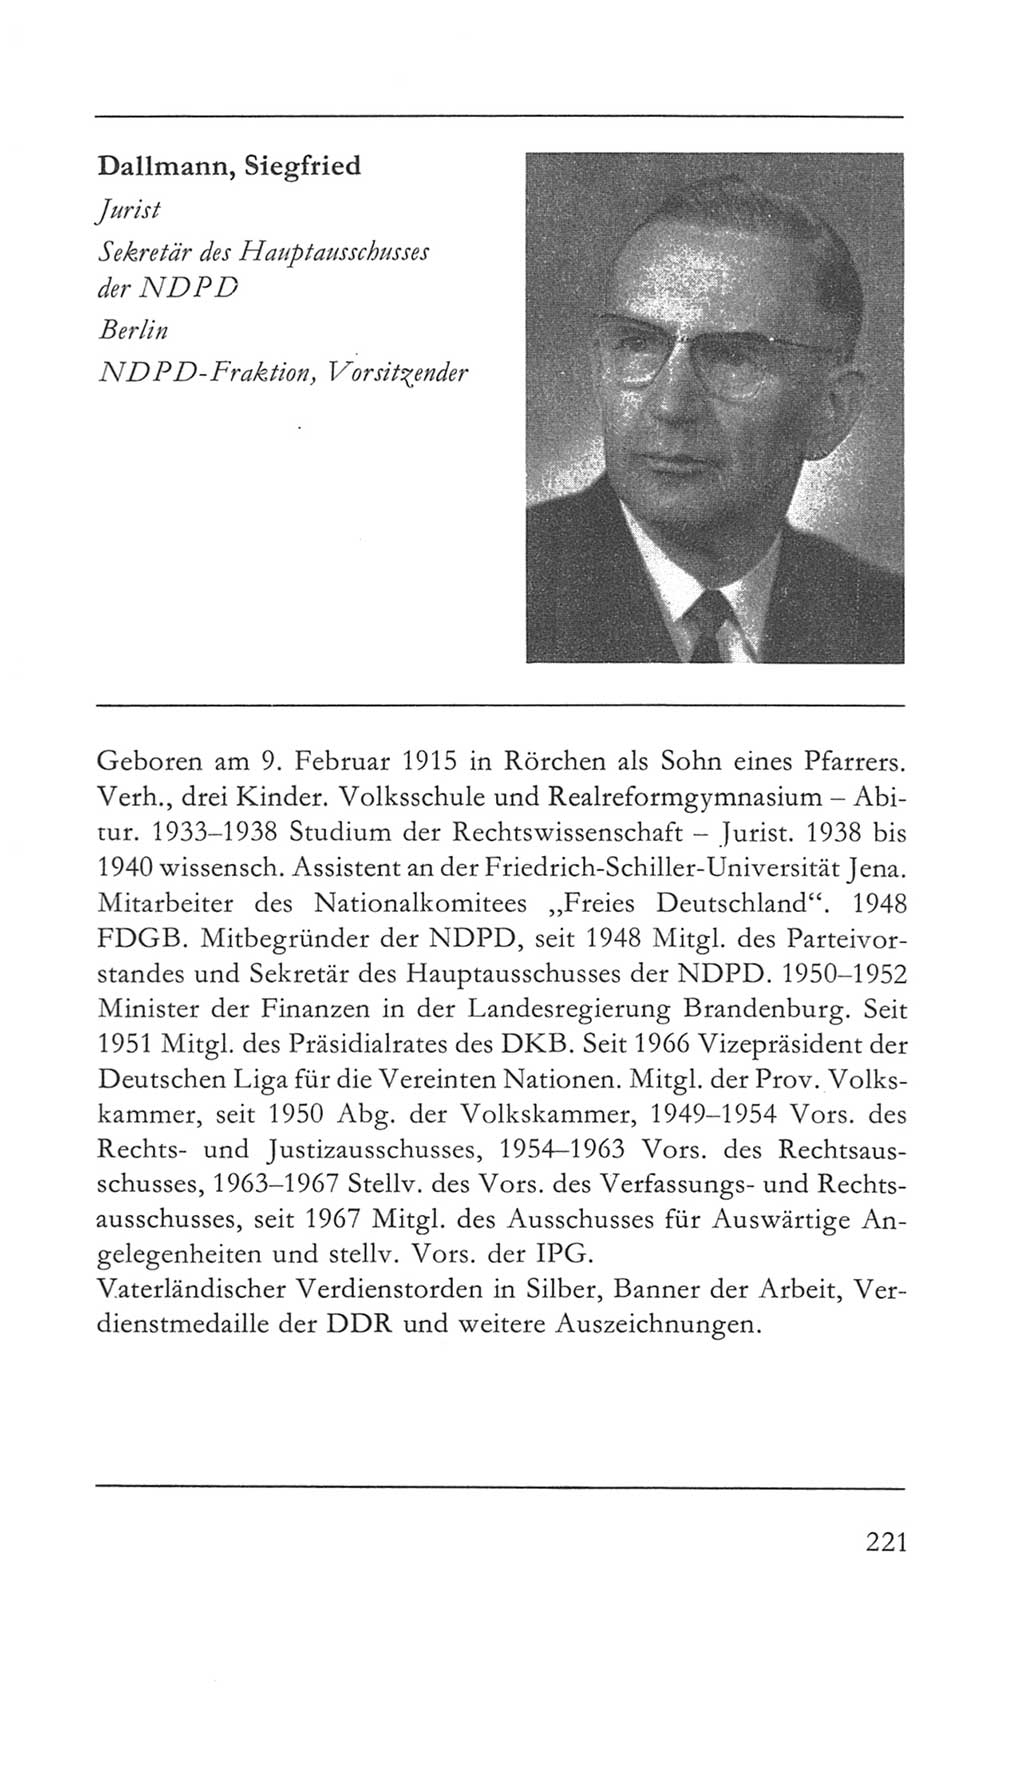 Volkskammer (VK) der Deutschen Demokratischen Republik (DDR) 5. Wahlperiode 1967-1971, Seite 221 (VK. DDR 5. WP. 1967-1971, S. 221)